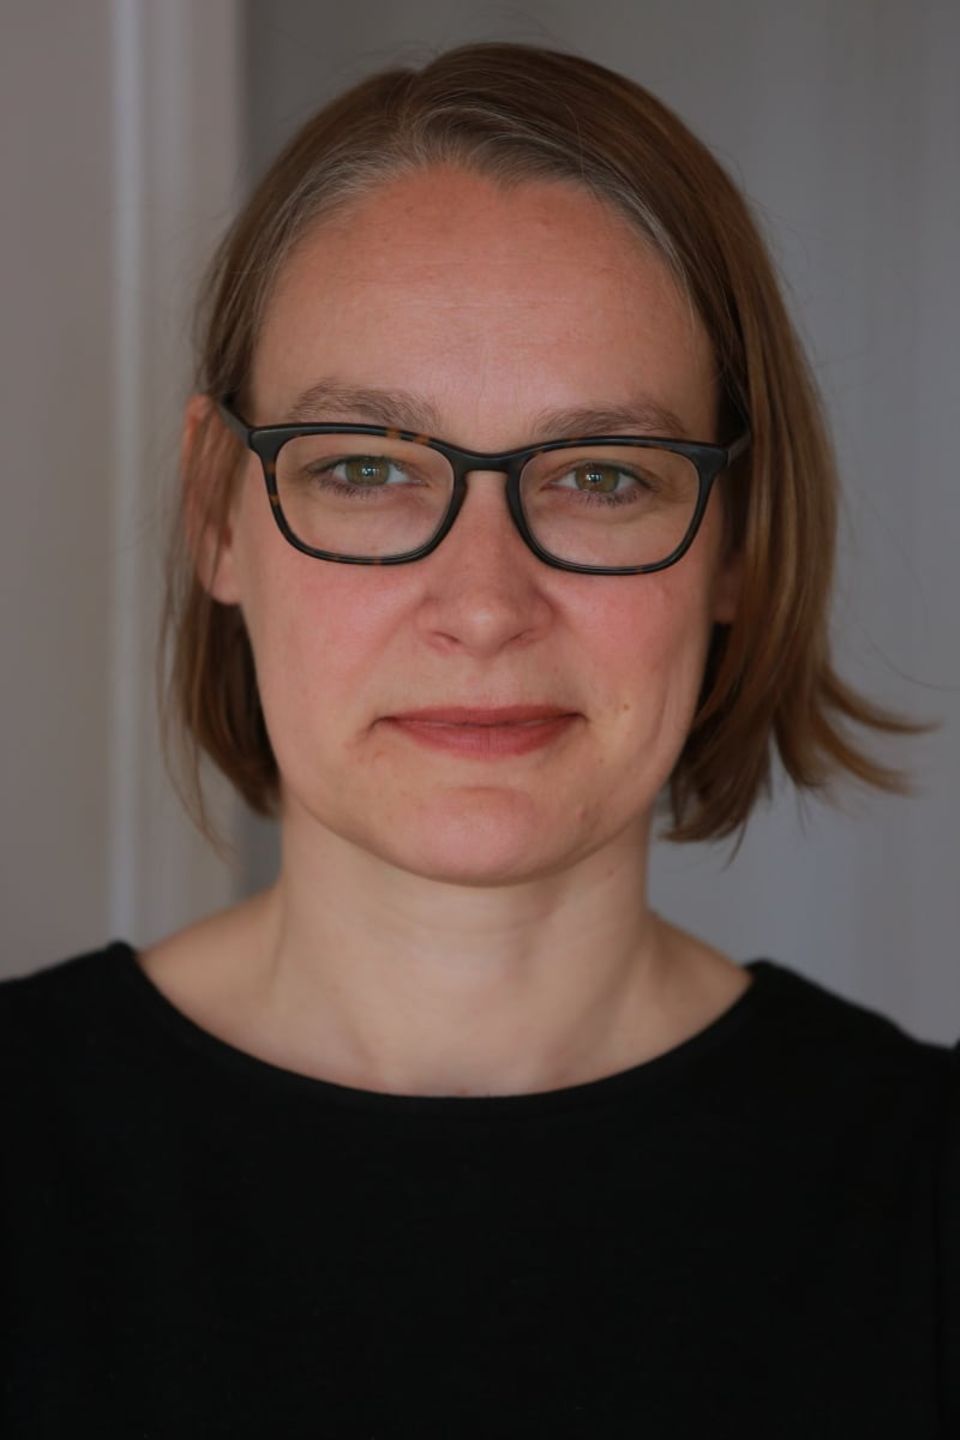 Alexandra Bielecke arbeitet als Psychologin, Mediatorin und Coach. Außerdem ist sie die erste Vorsitzende des Bundesverband MEDIATION Link, Foto: Jörg Winter